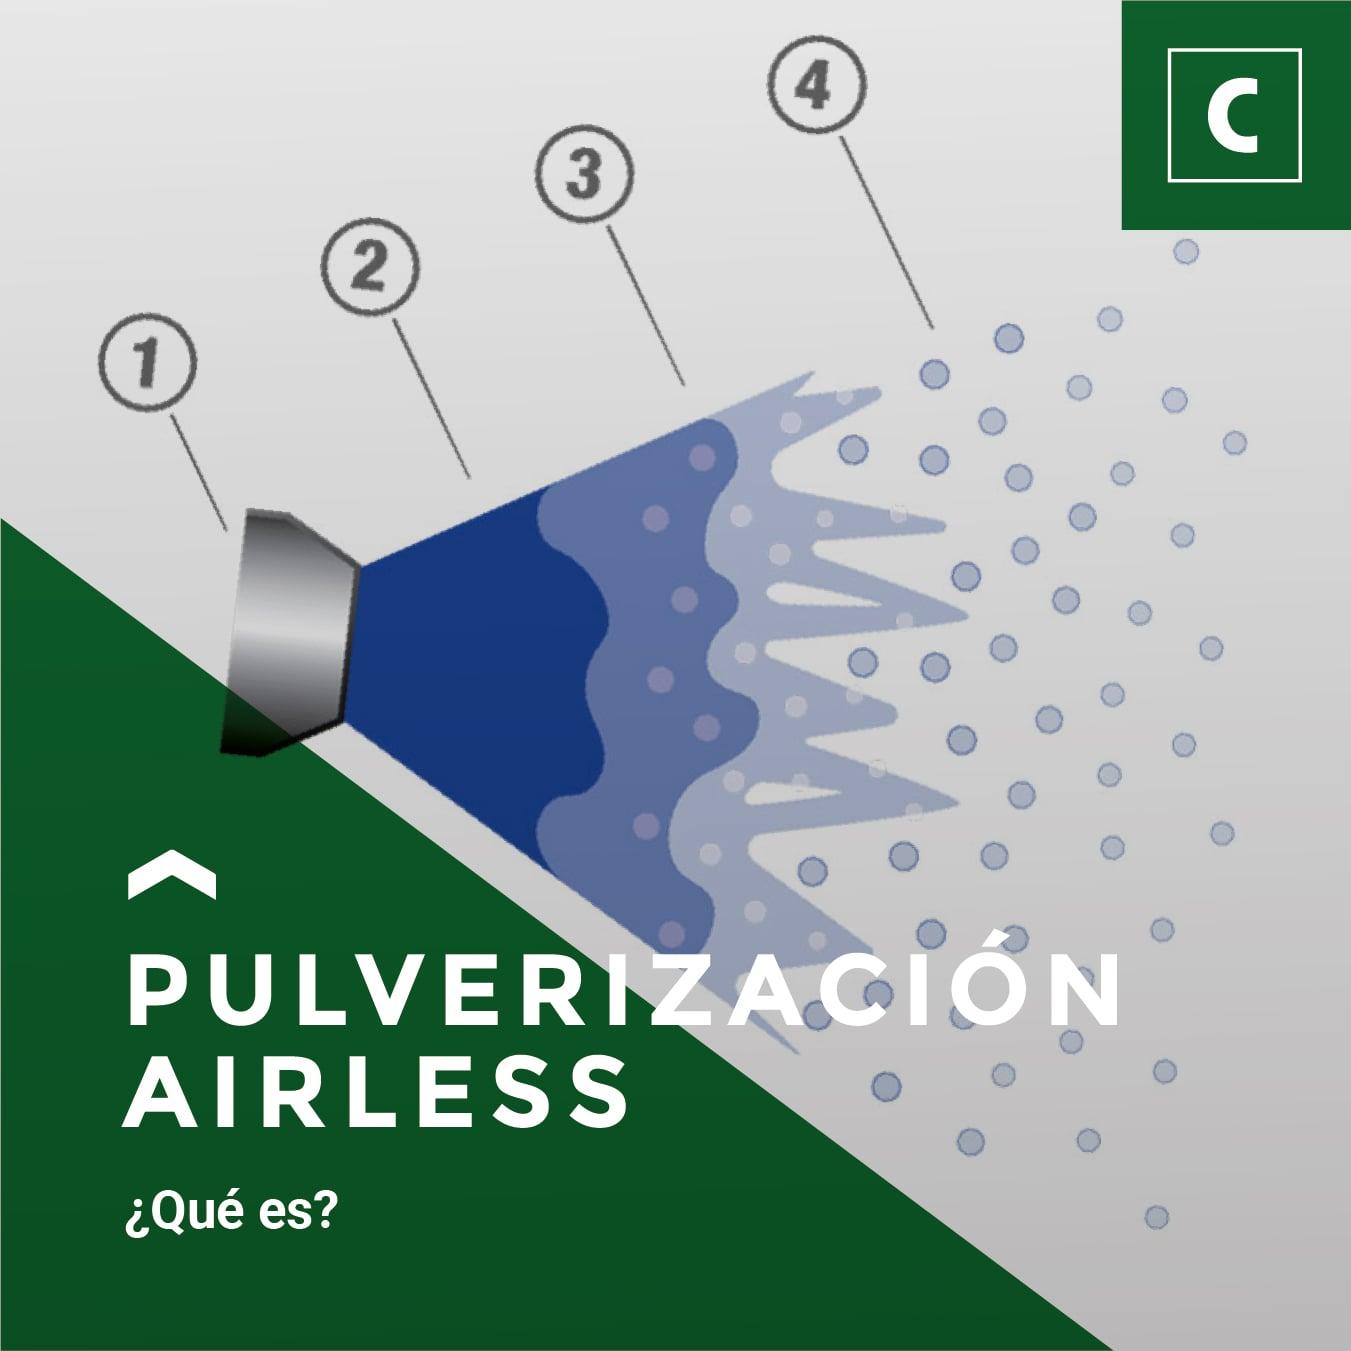 Pulverización airless